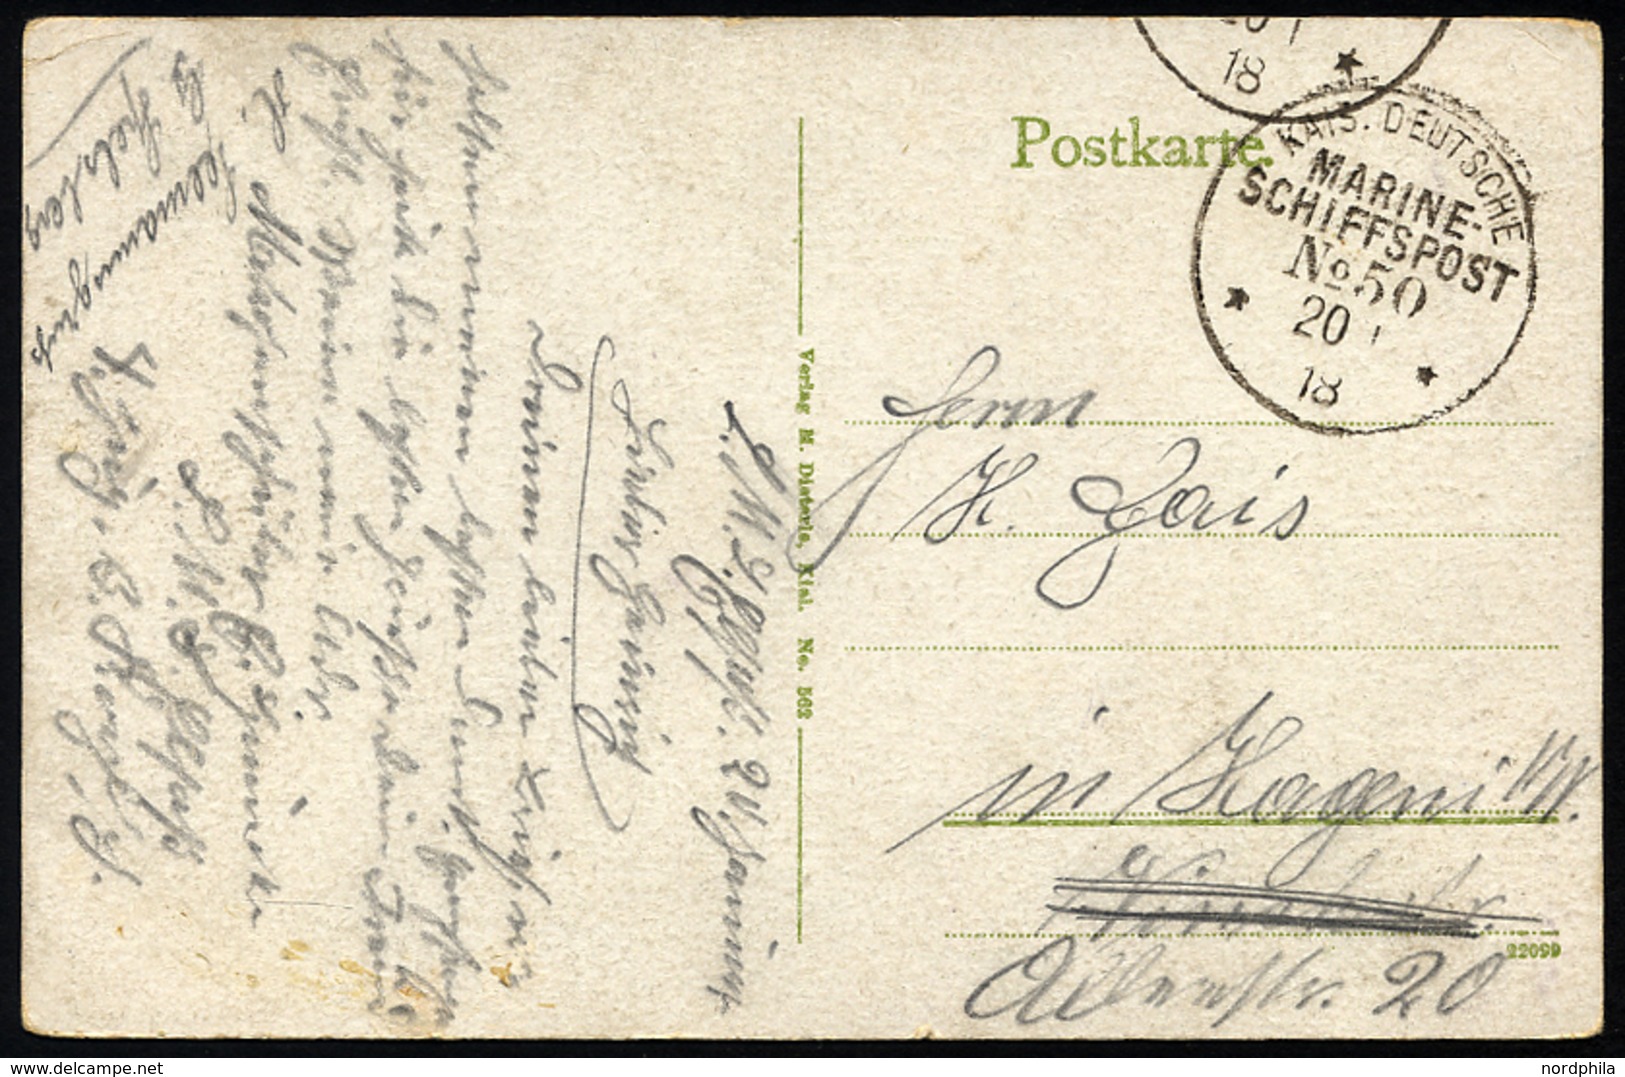 MSP VON 1914 - 1918 50 (Linienschiff ELSASS), 20.1.1918, Feldpost-Ansichtskarte (S.M.S. Thüringen) Von Bord Der Elsaß, P - Deutsche Post In Der Türkei